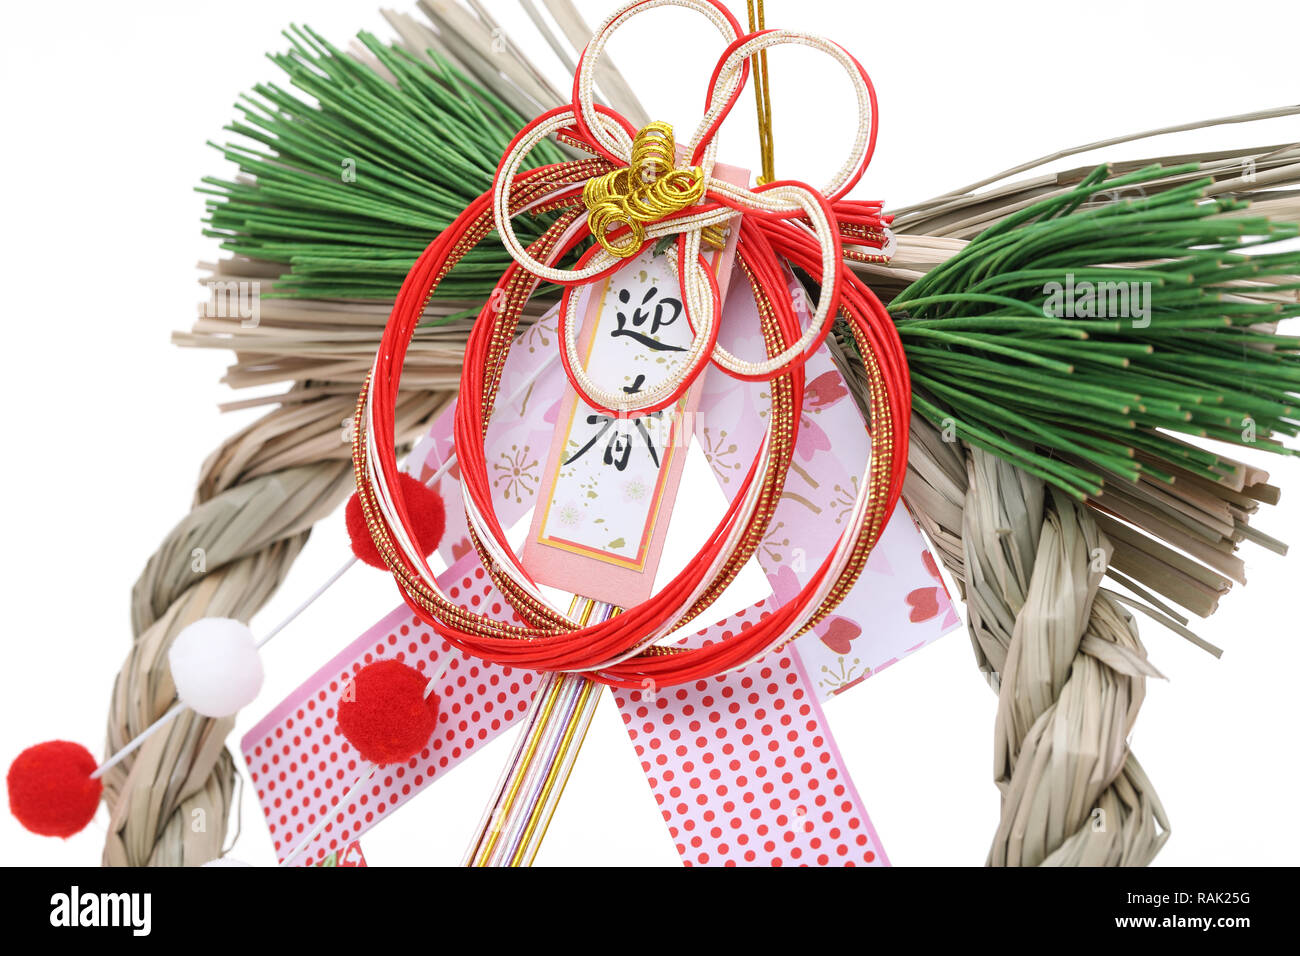 Décoration de Shimenawa. Célébration du Nouvel An japonais objet